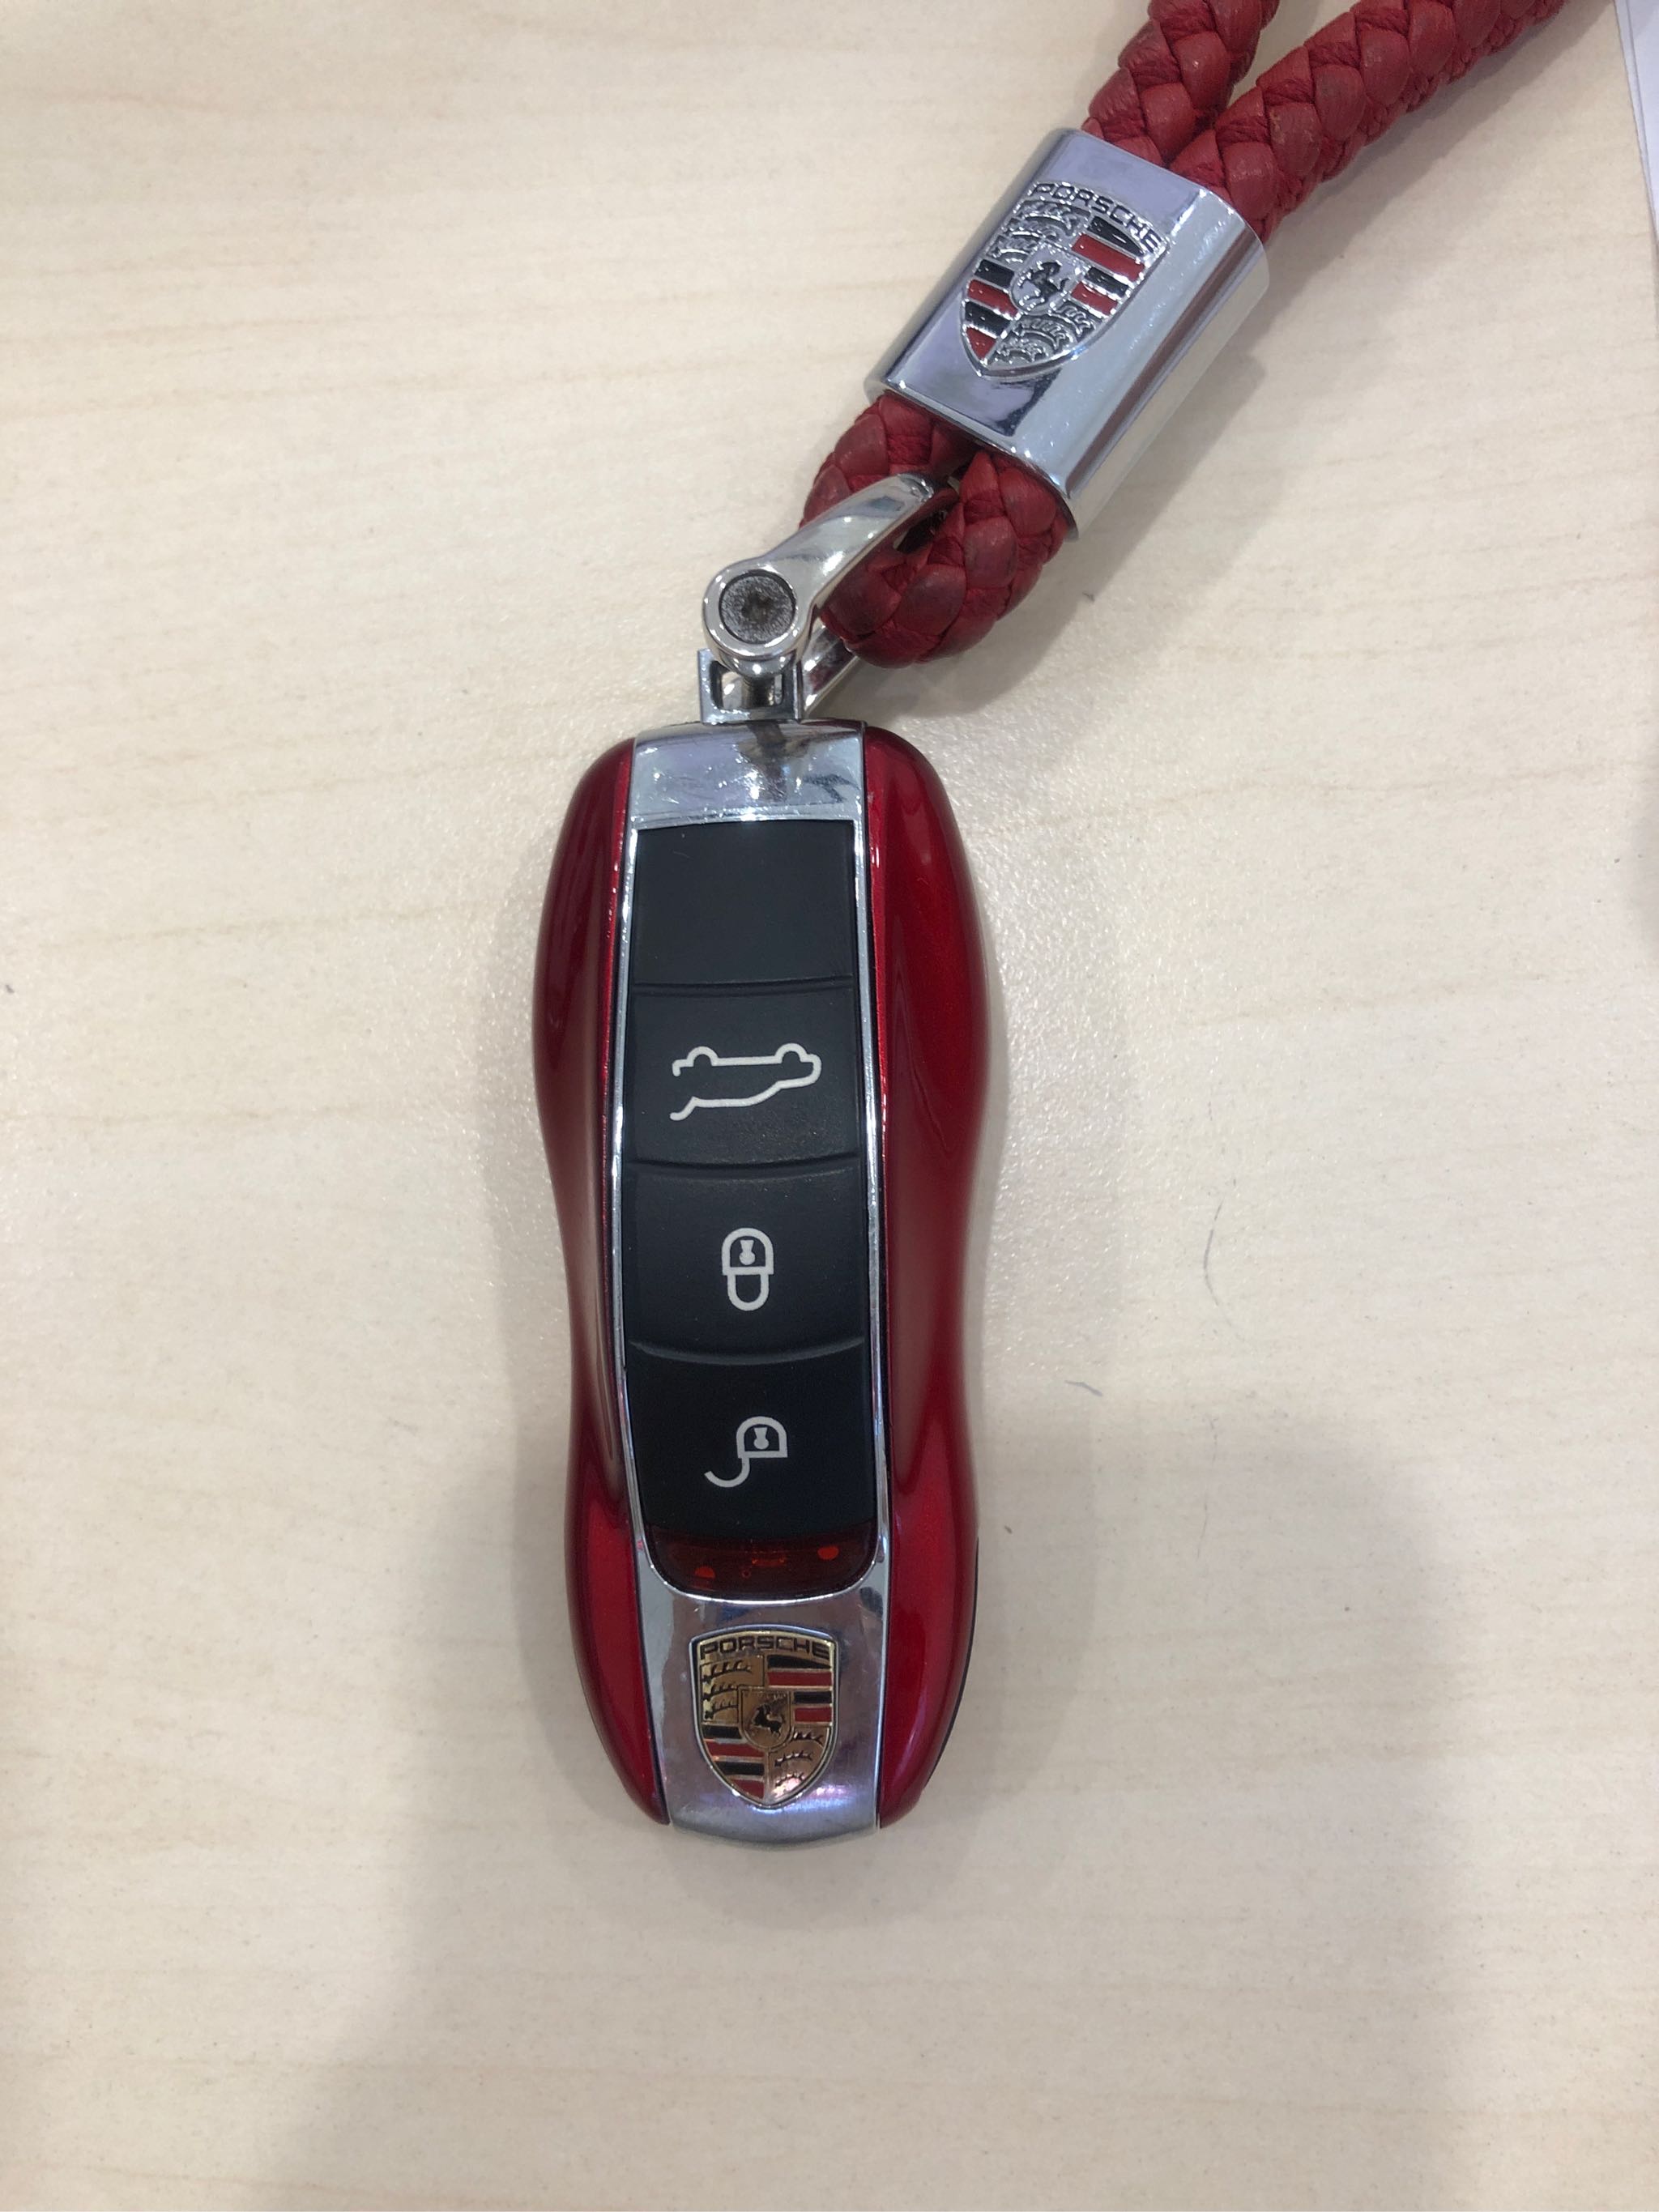 适用于保时捷钥匙壳卡宴macan帕拉梅拉钥匙套718改装钥匙扣钥匙包